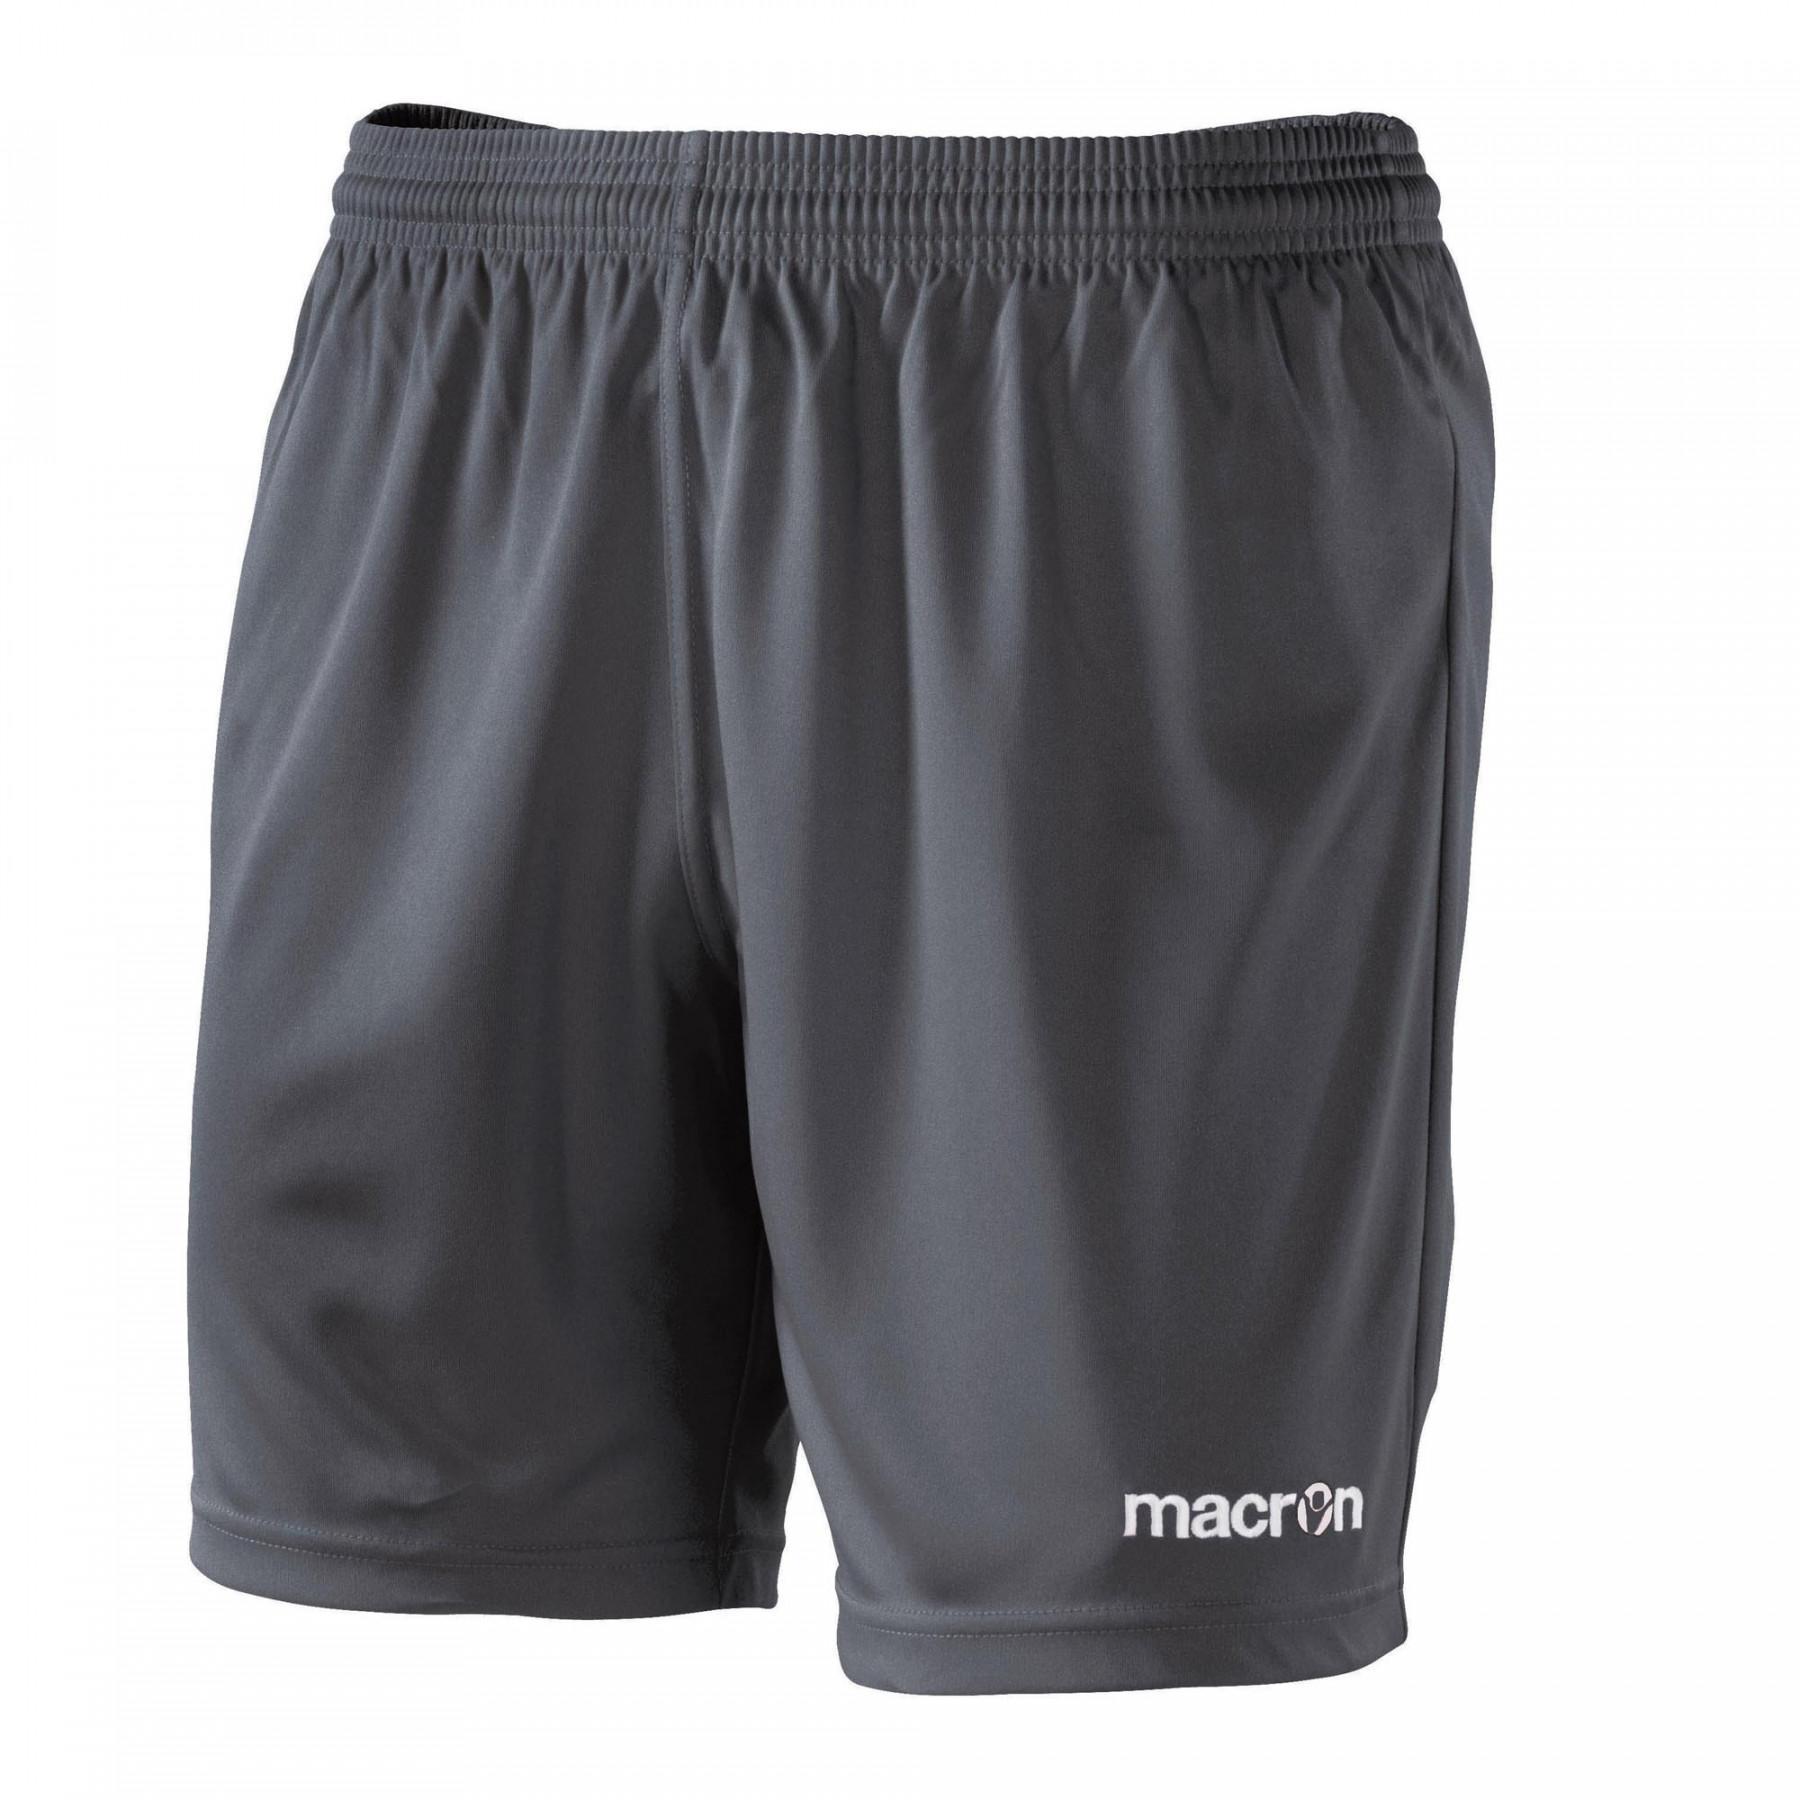 Short - Shorts - Men's wear - Handball wear